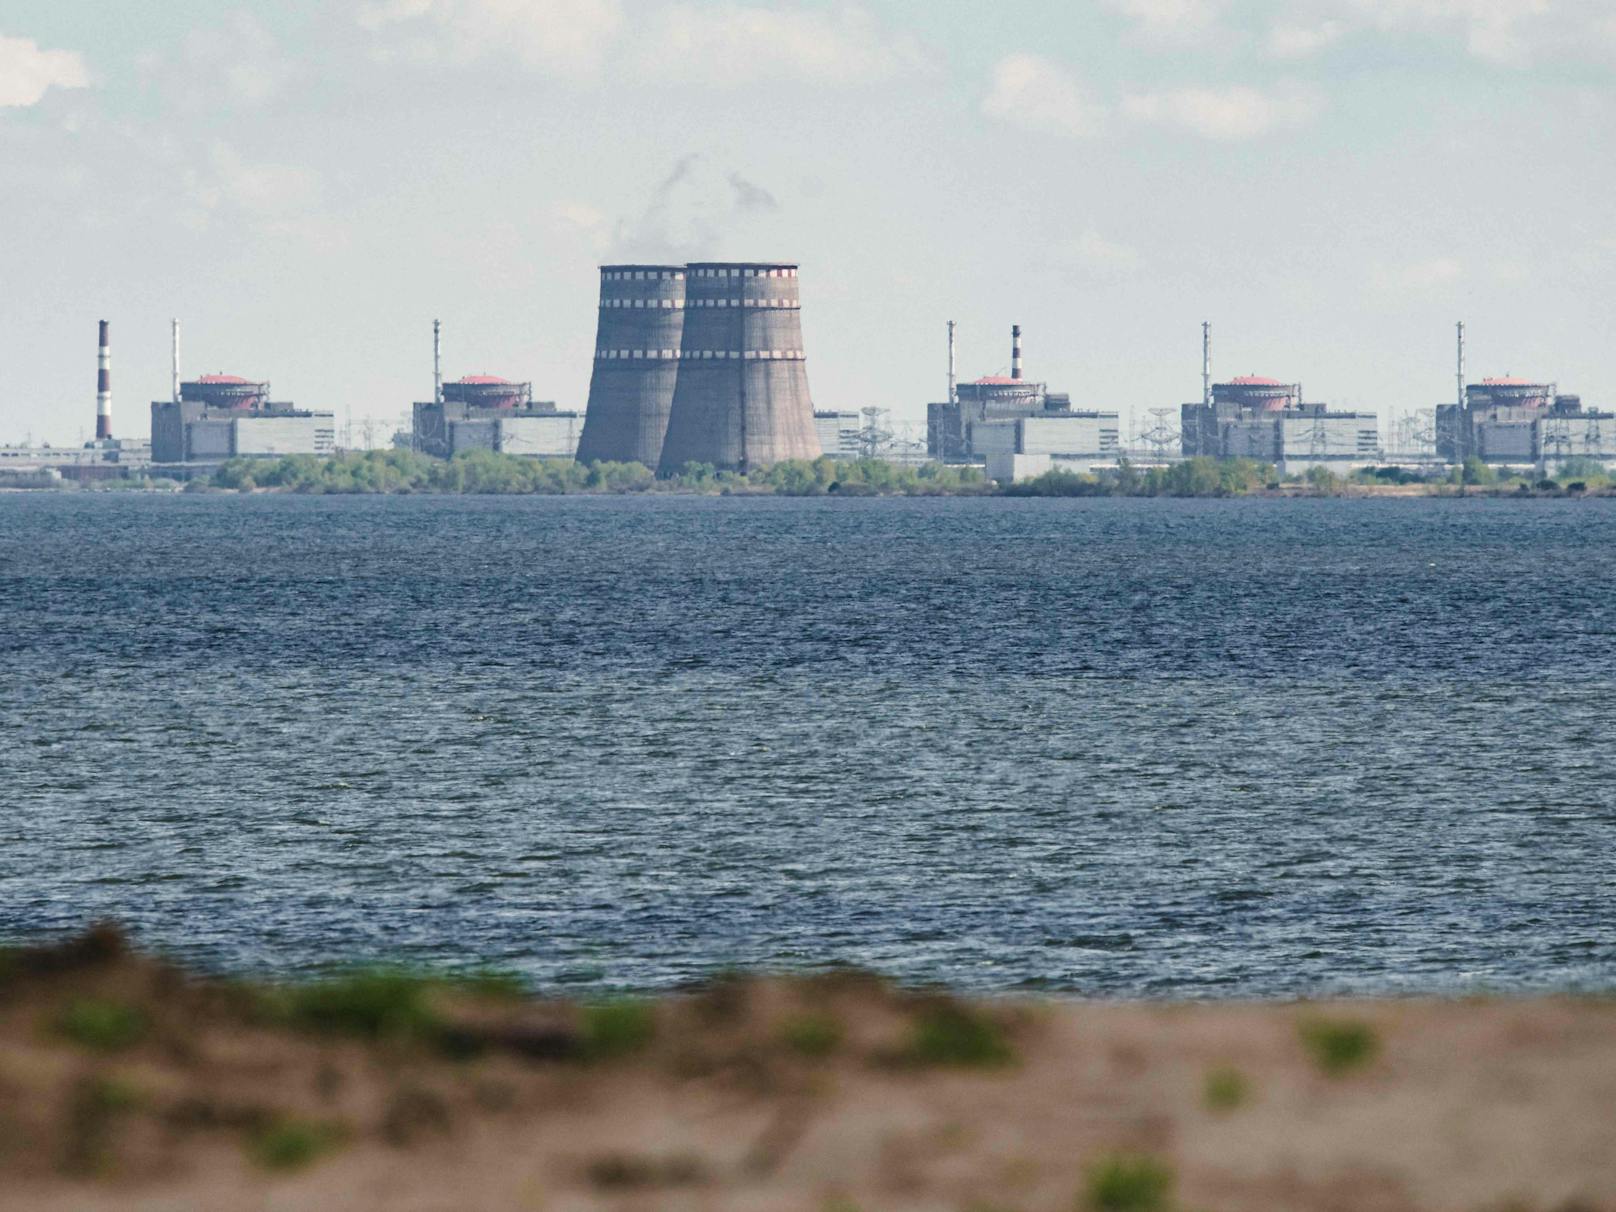 Immer wieder ist das ukrainische Atomkraftwerk Saporischschja Ziel von Angriffen.